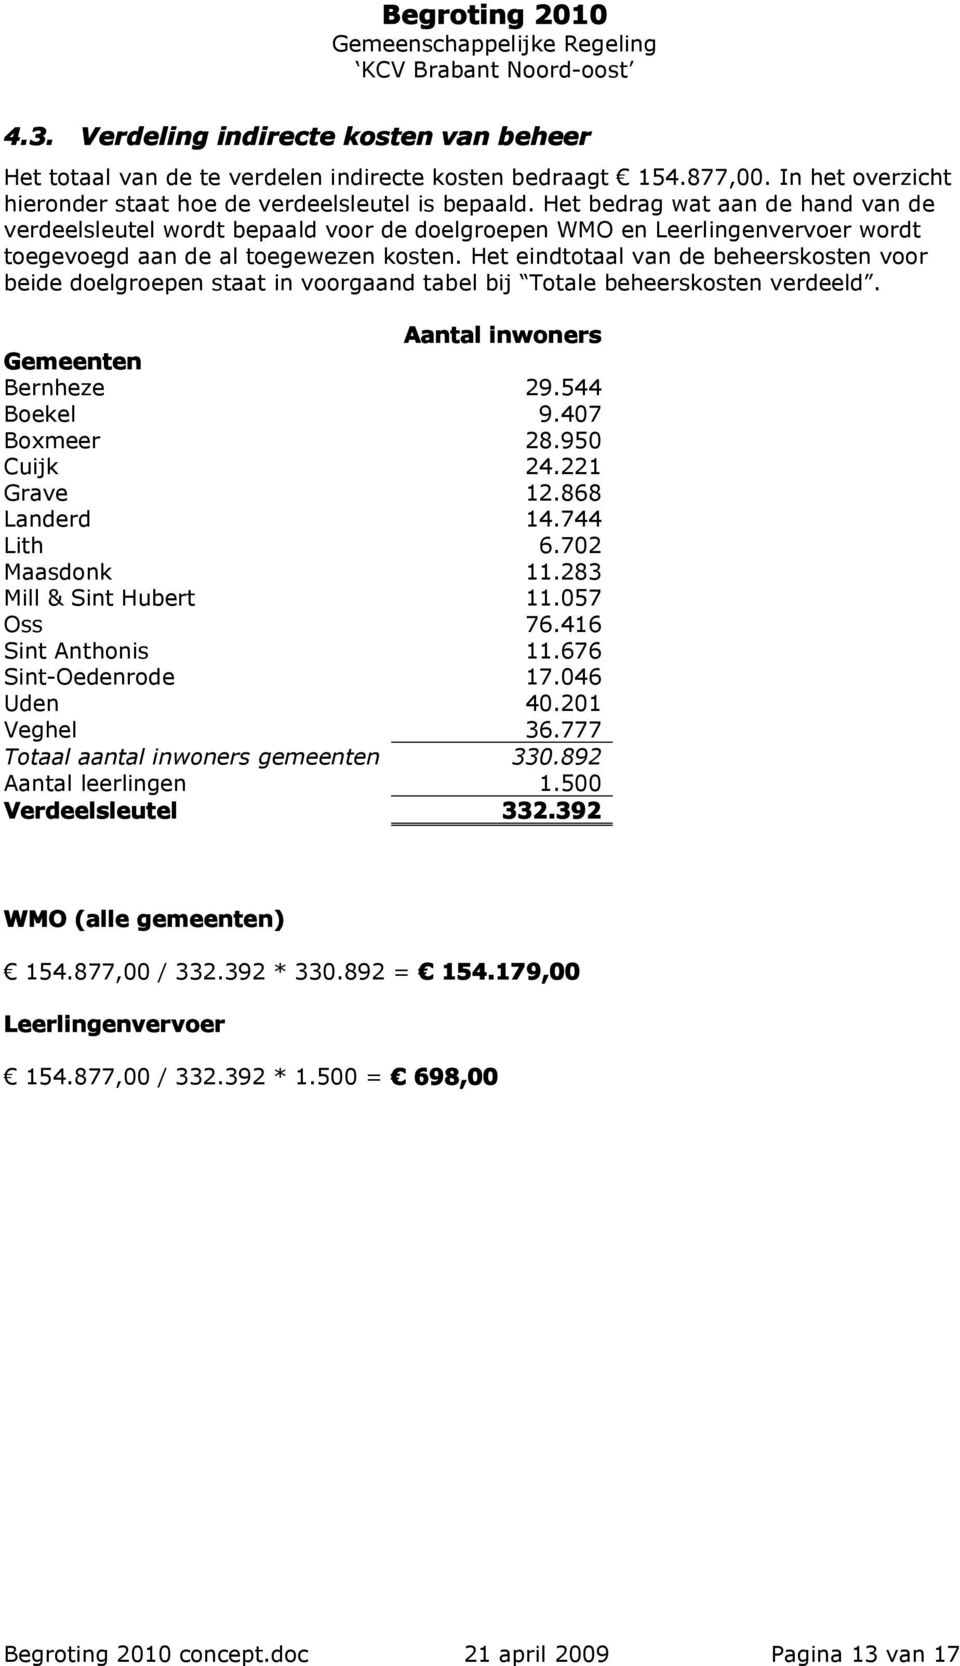 Het eindtotaal van de beheerskosten voor beide doelgroepen staat in voorgaand tabel bij Totale beheerskosten verdeeld. Aantal inwoners Gemeenten Bernheze 29.544 Boekel 9.407 Boxmeer 28.950 Cuijk 24.